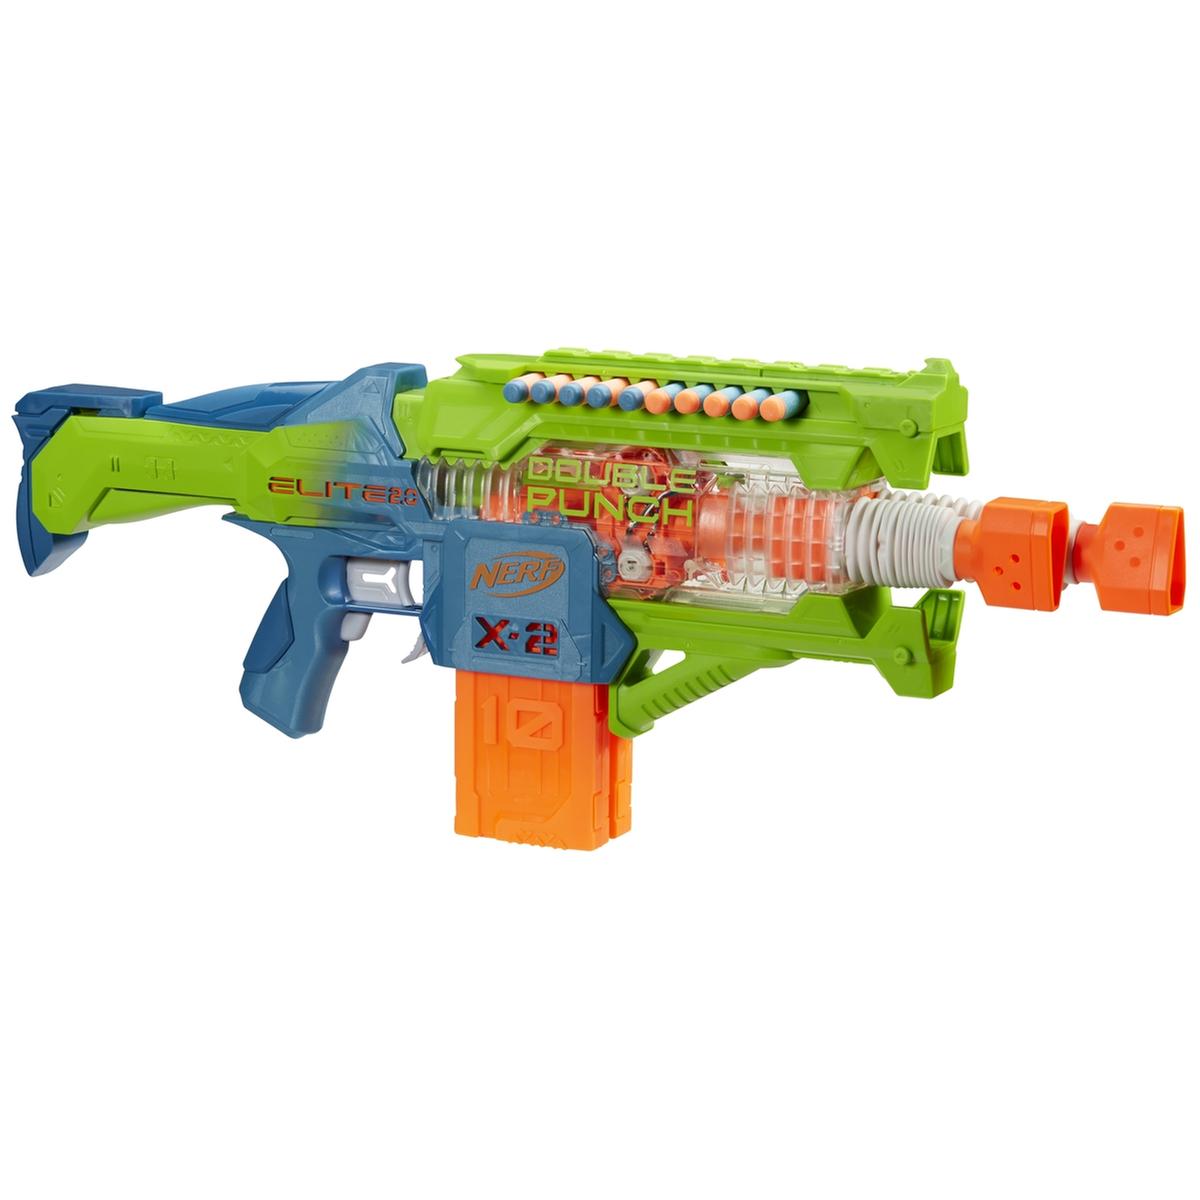 Nerf - Lançador motorizado Double Punch com 50 dardos e 2 clipes ㅤ | Nerf |  Loja de brinquedos e videojogos Online Toysrus